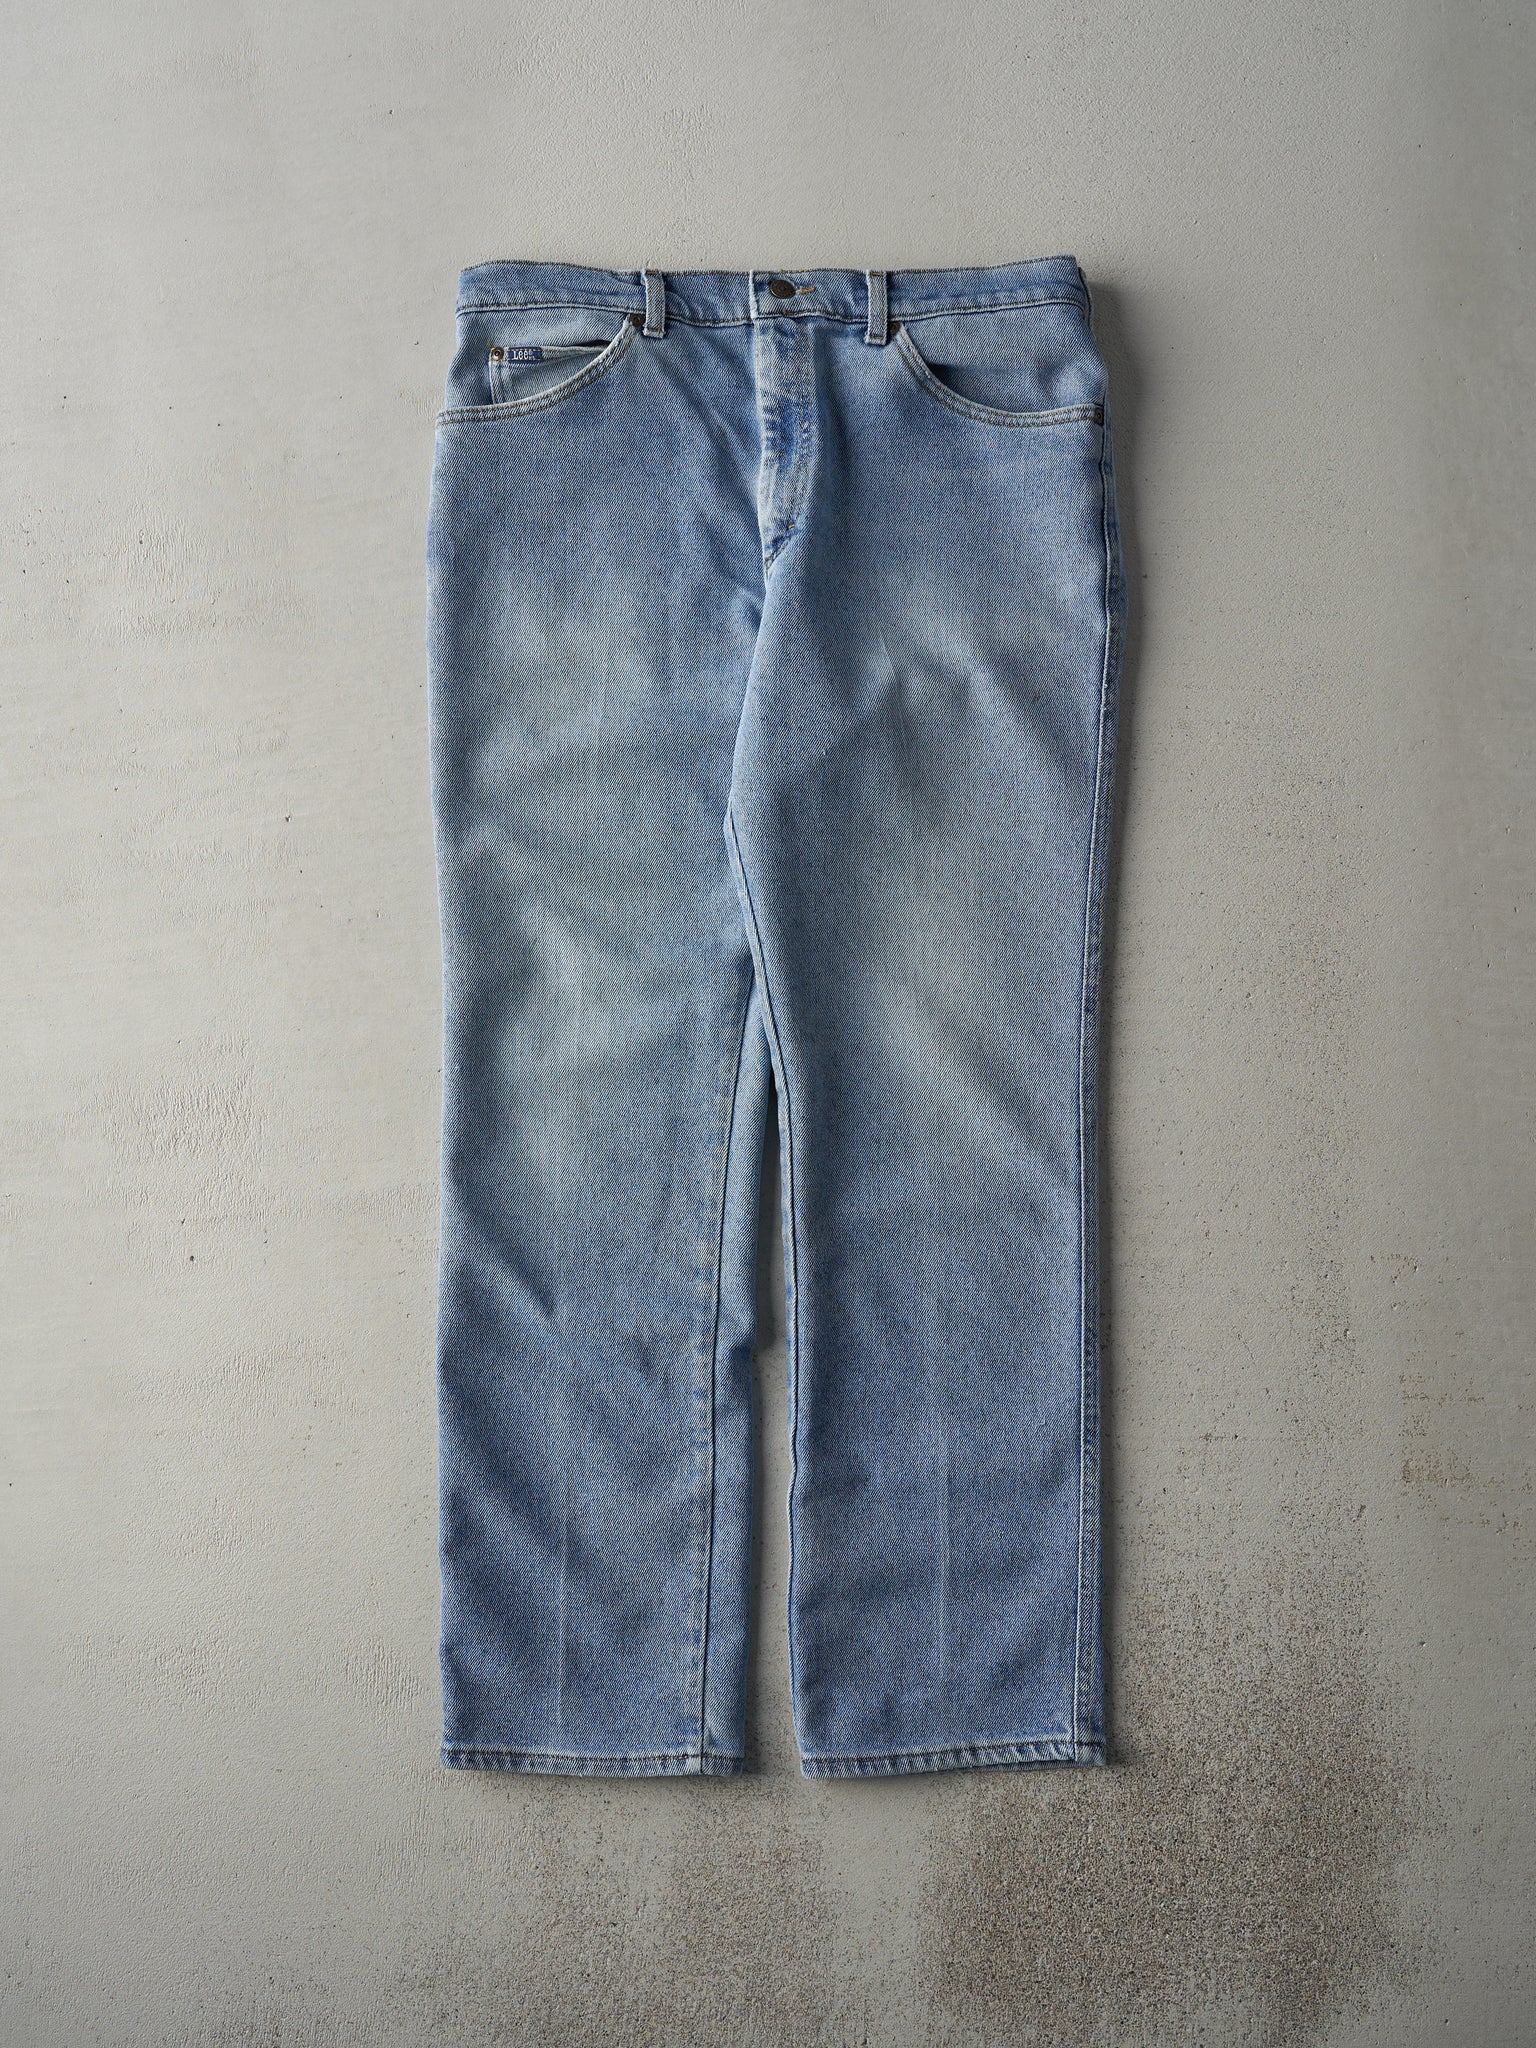 Vintage 80s Light Wash Lee Jeans (34x30)